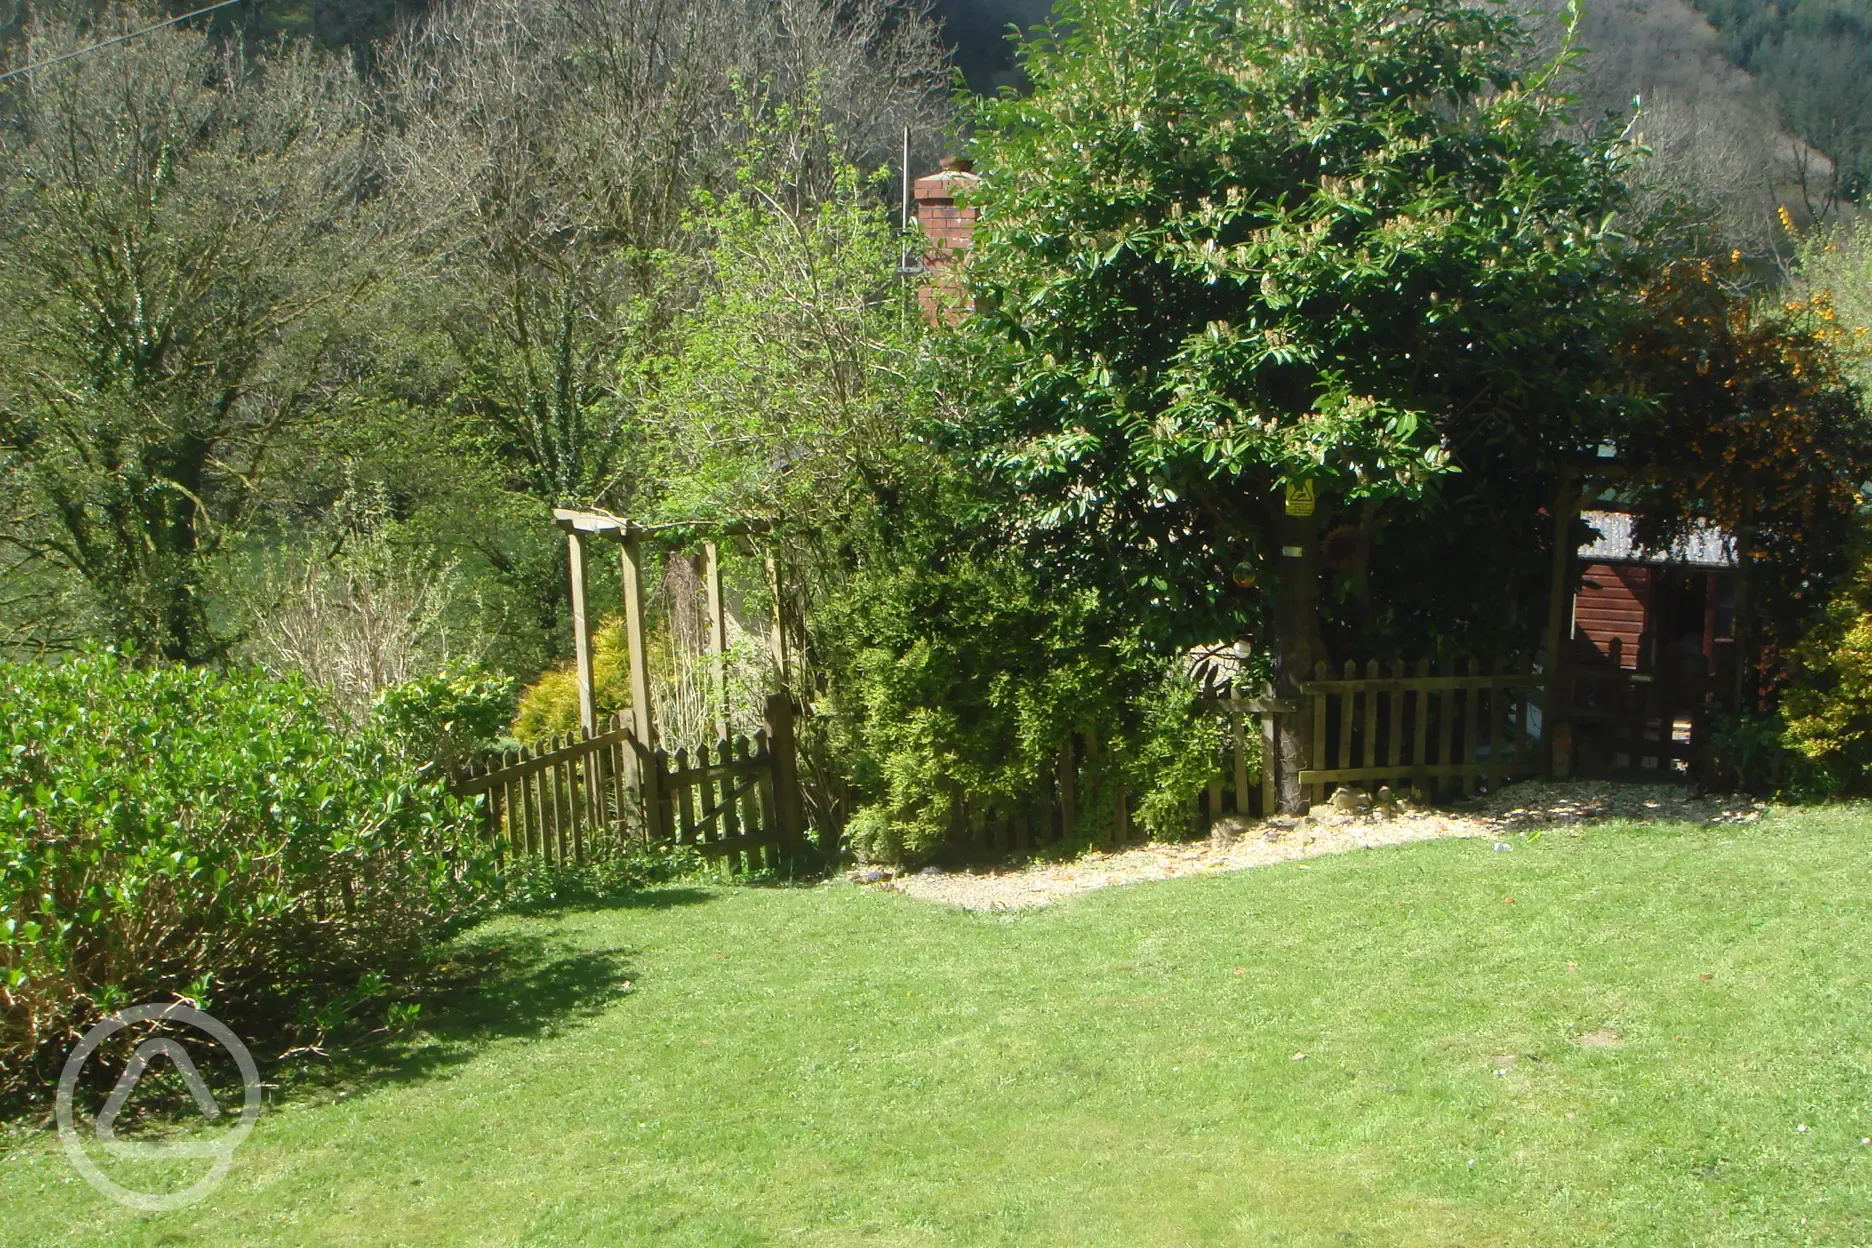 The garden area